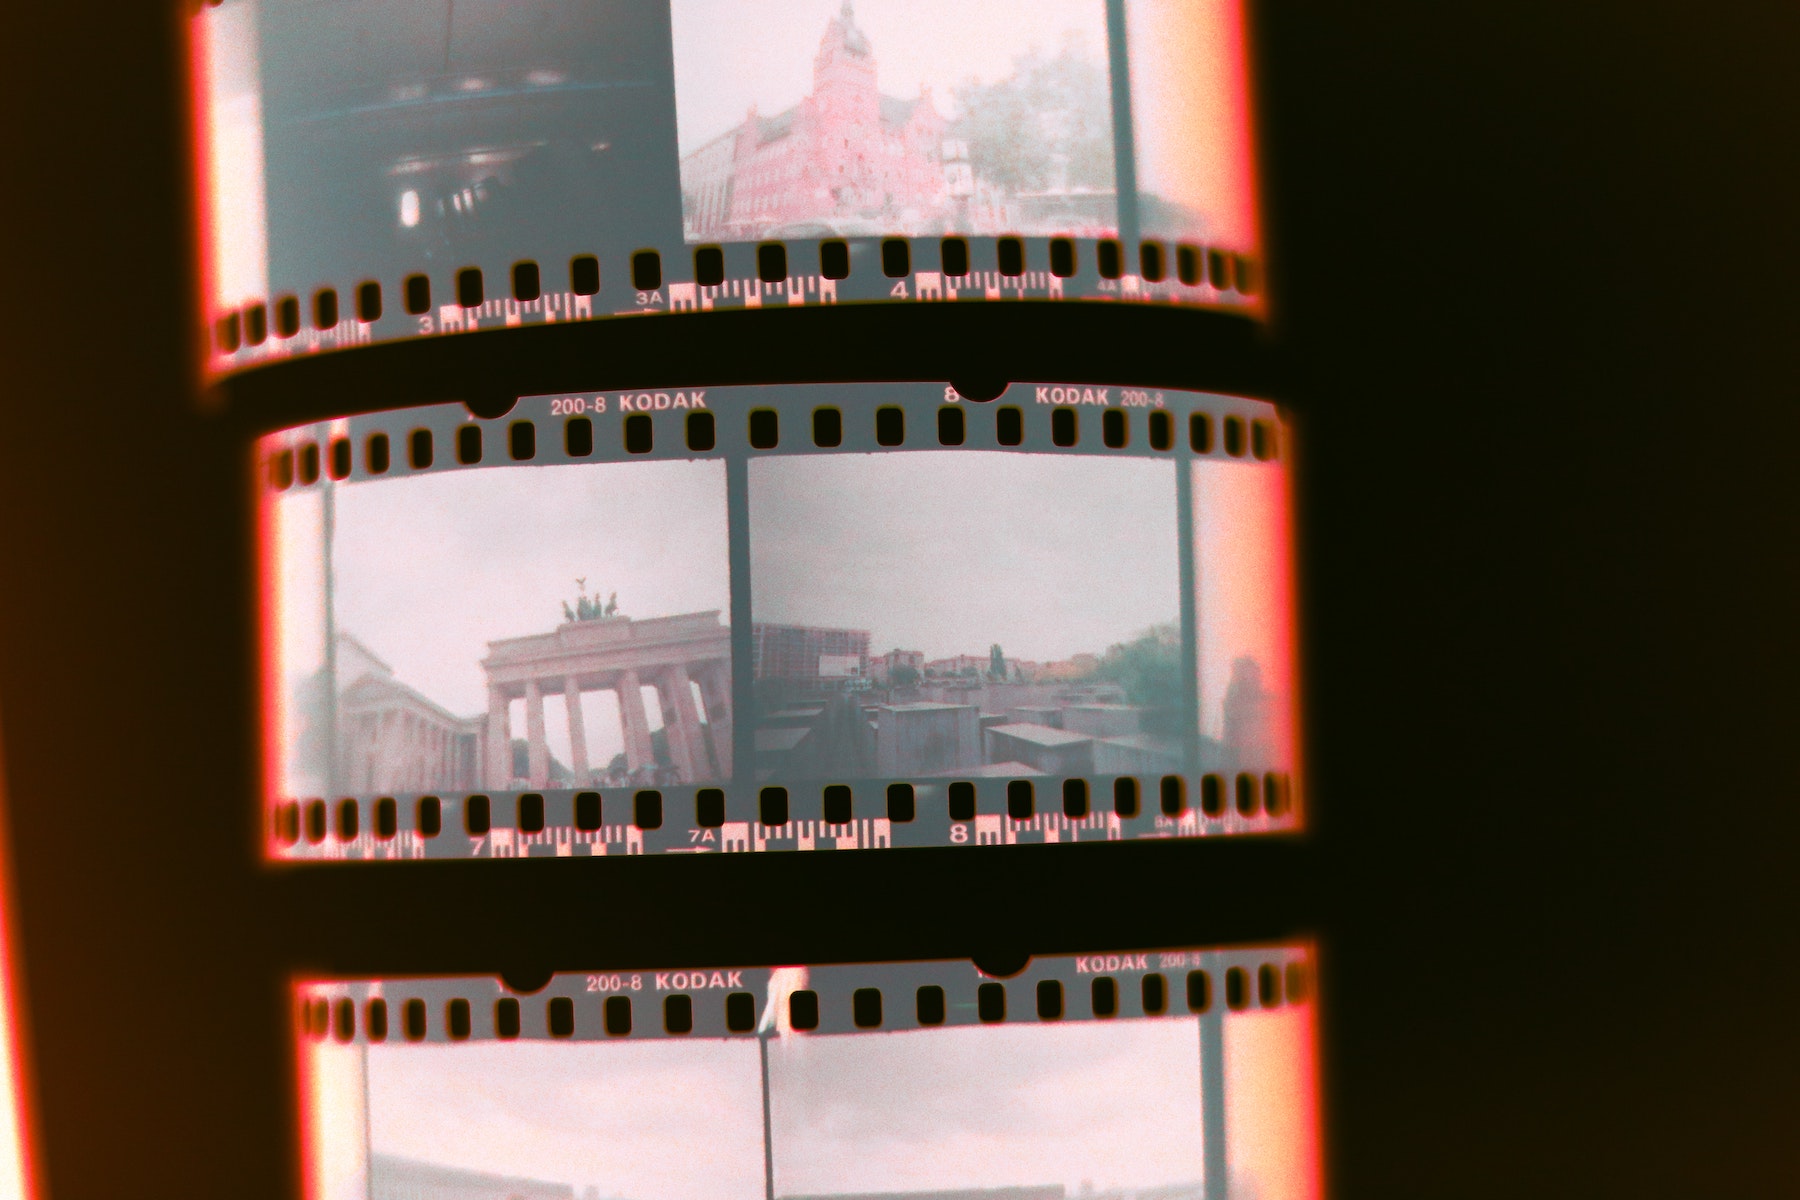 35mm film negatives